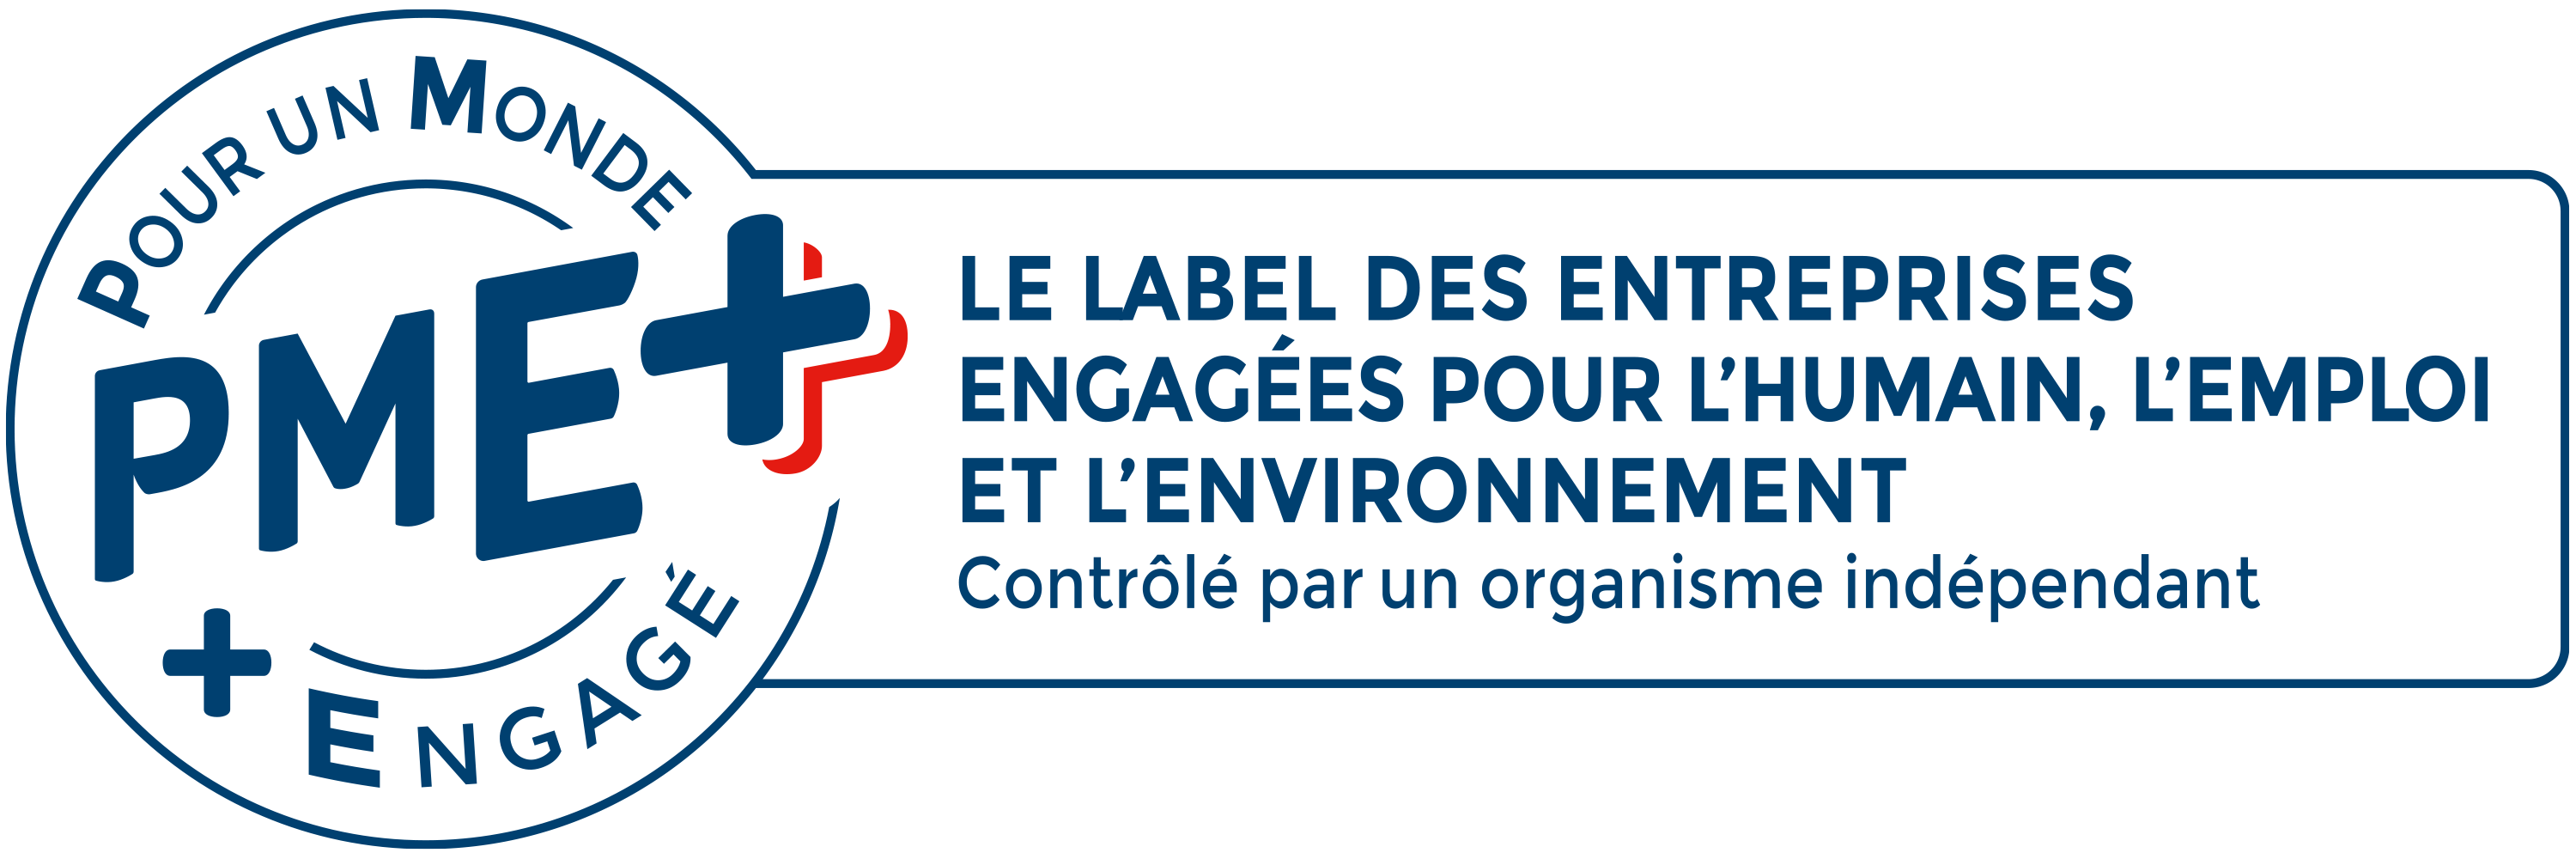 PME +, Le label des entreprises engagées pour l'humain, l'emploi et l'environnement